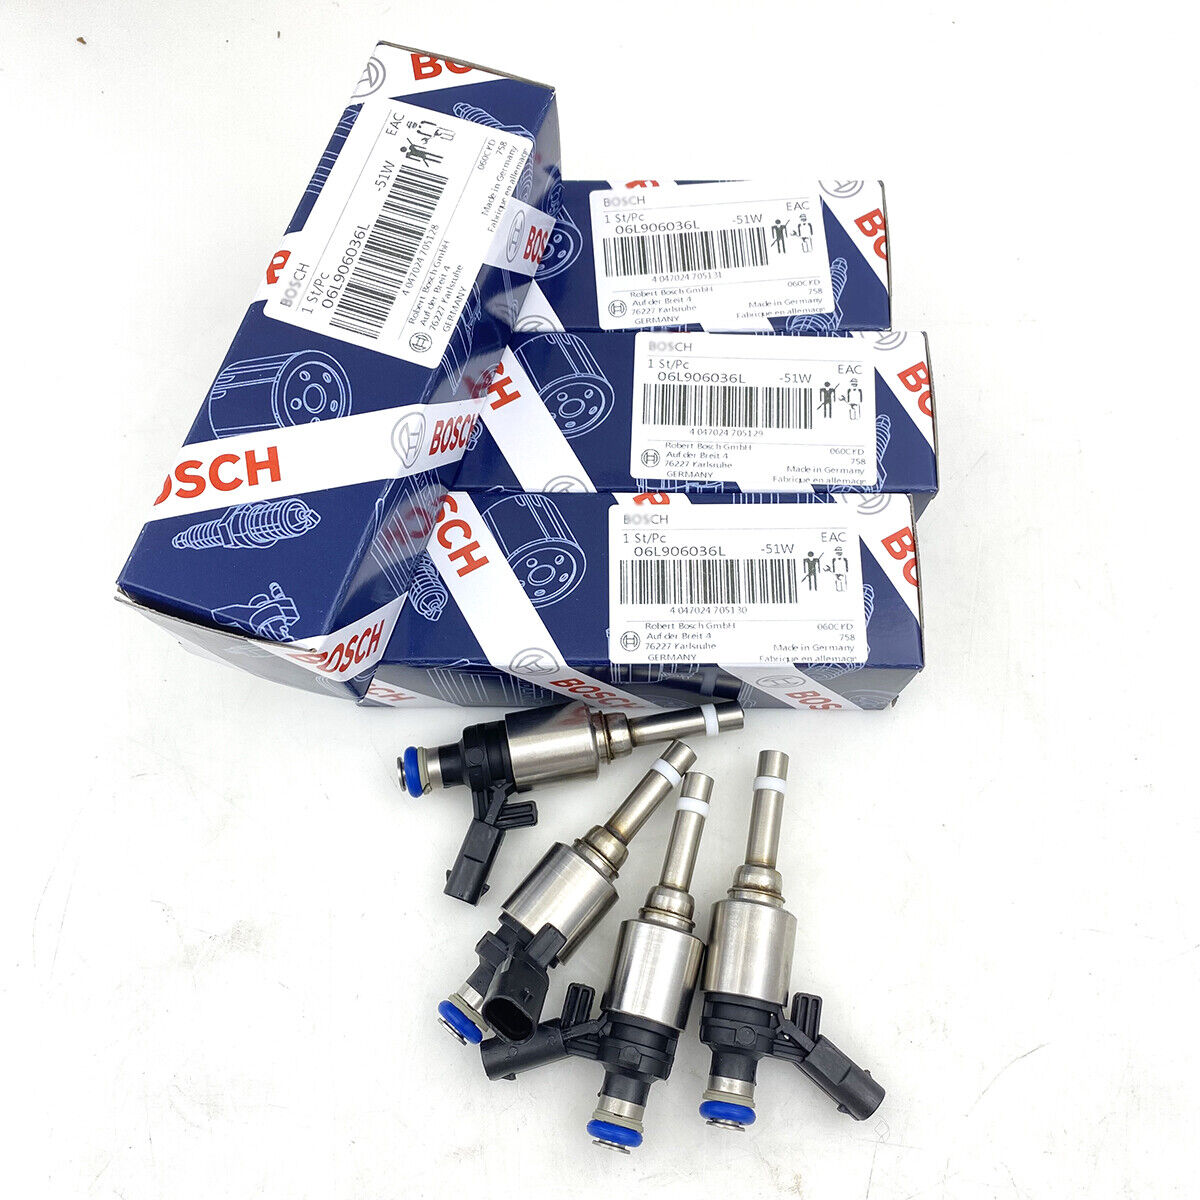 4pcs 06L906036L Bosch Fuel Injector Set For VW Golf Audi S3 TTS Quattro 2.0T New